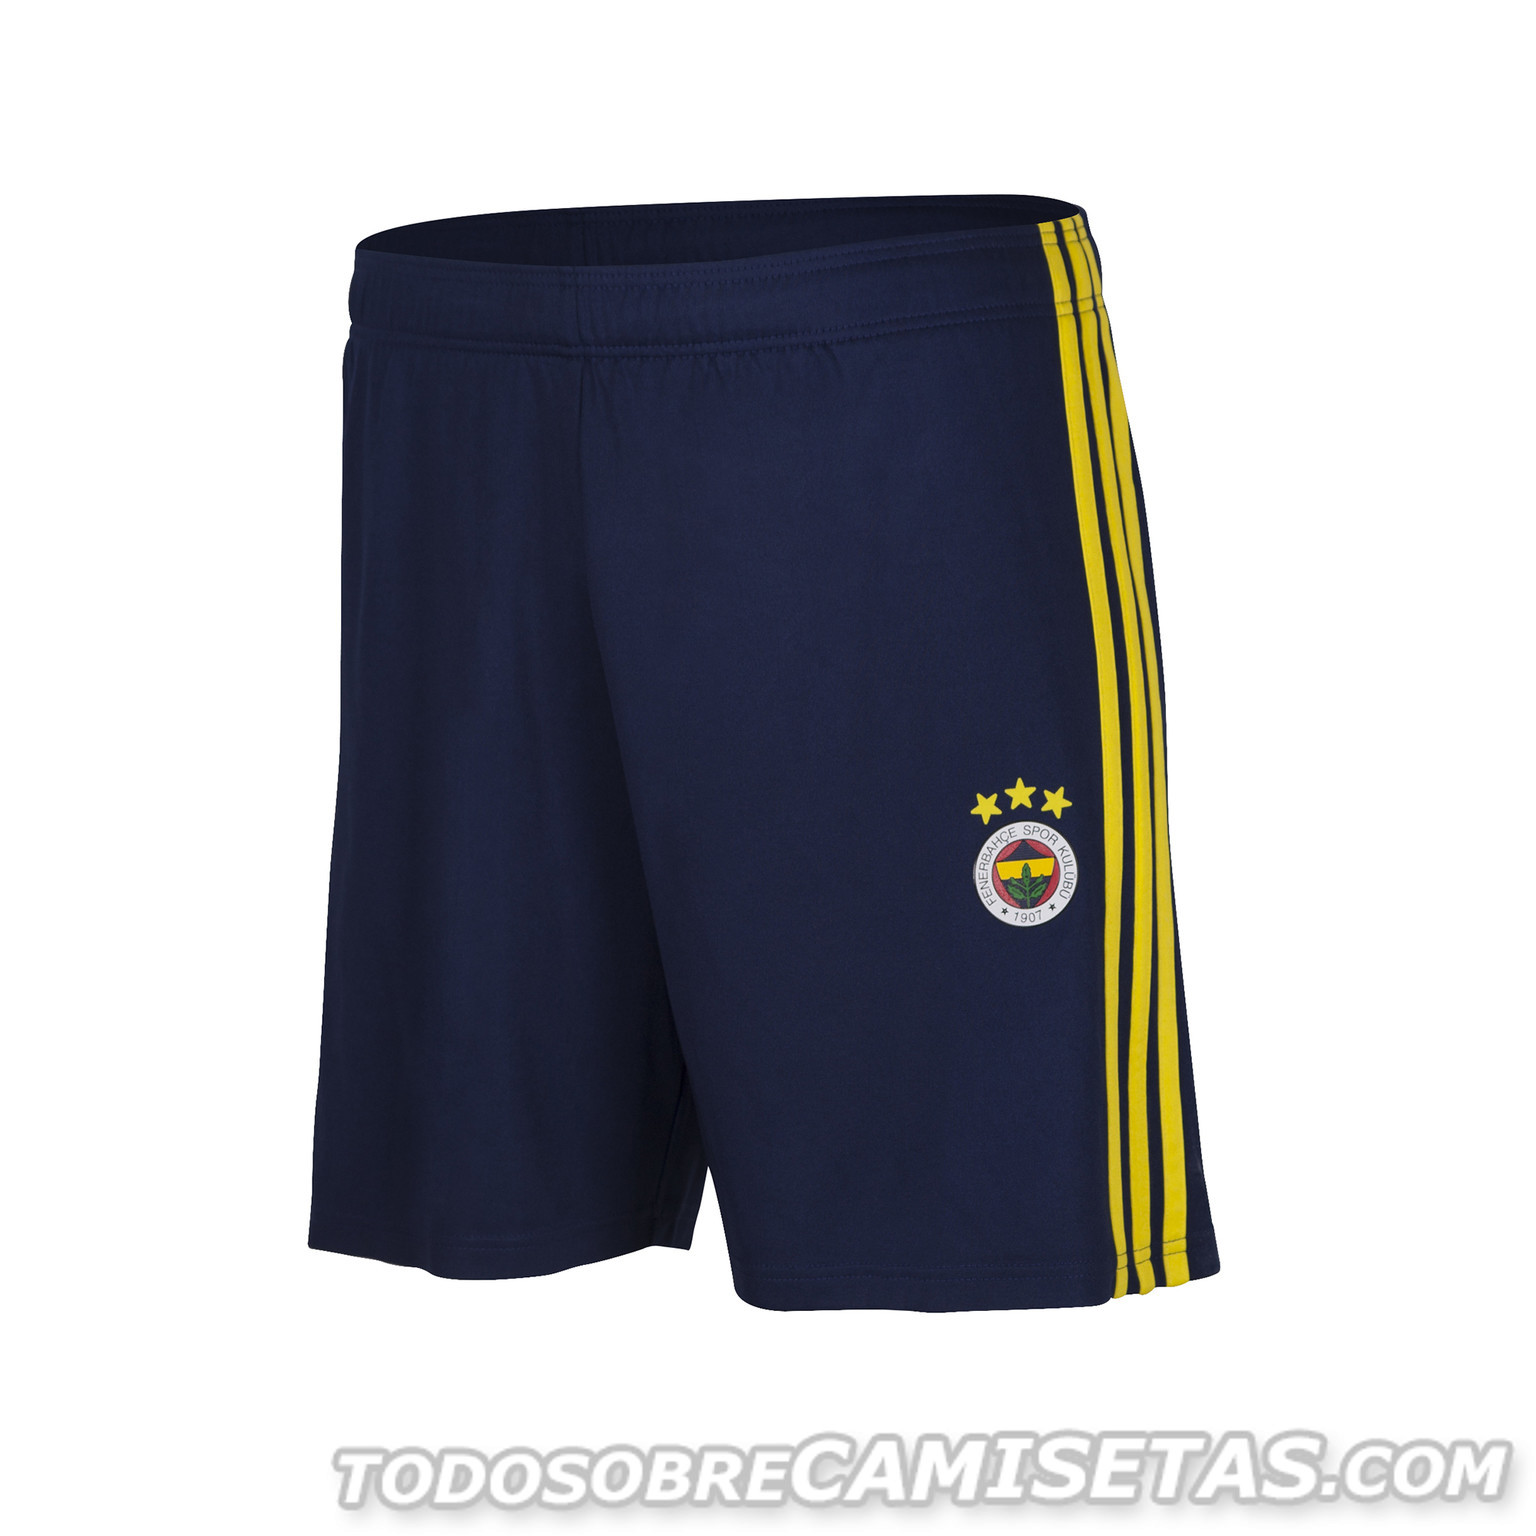 Fenerbahçe Adidas Kits 2018-19